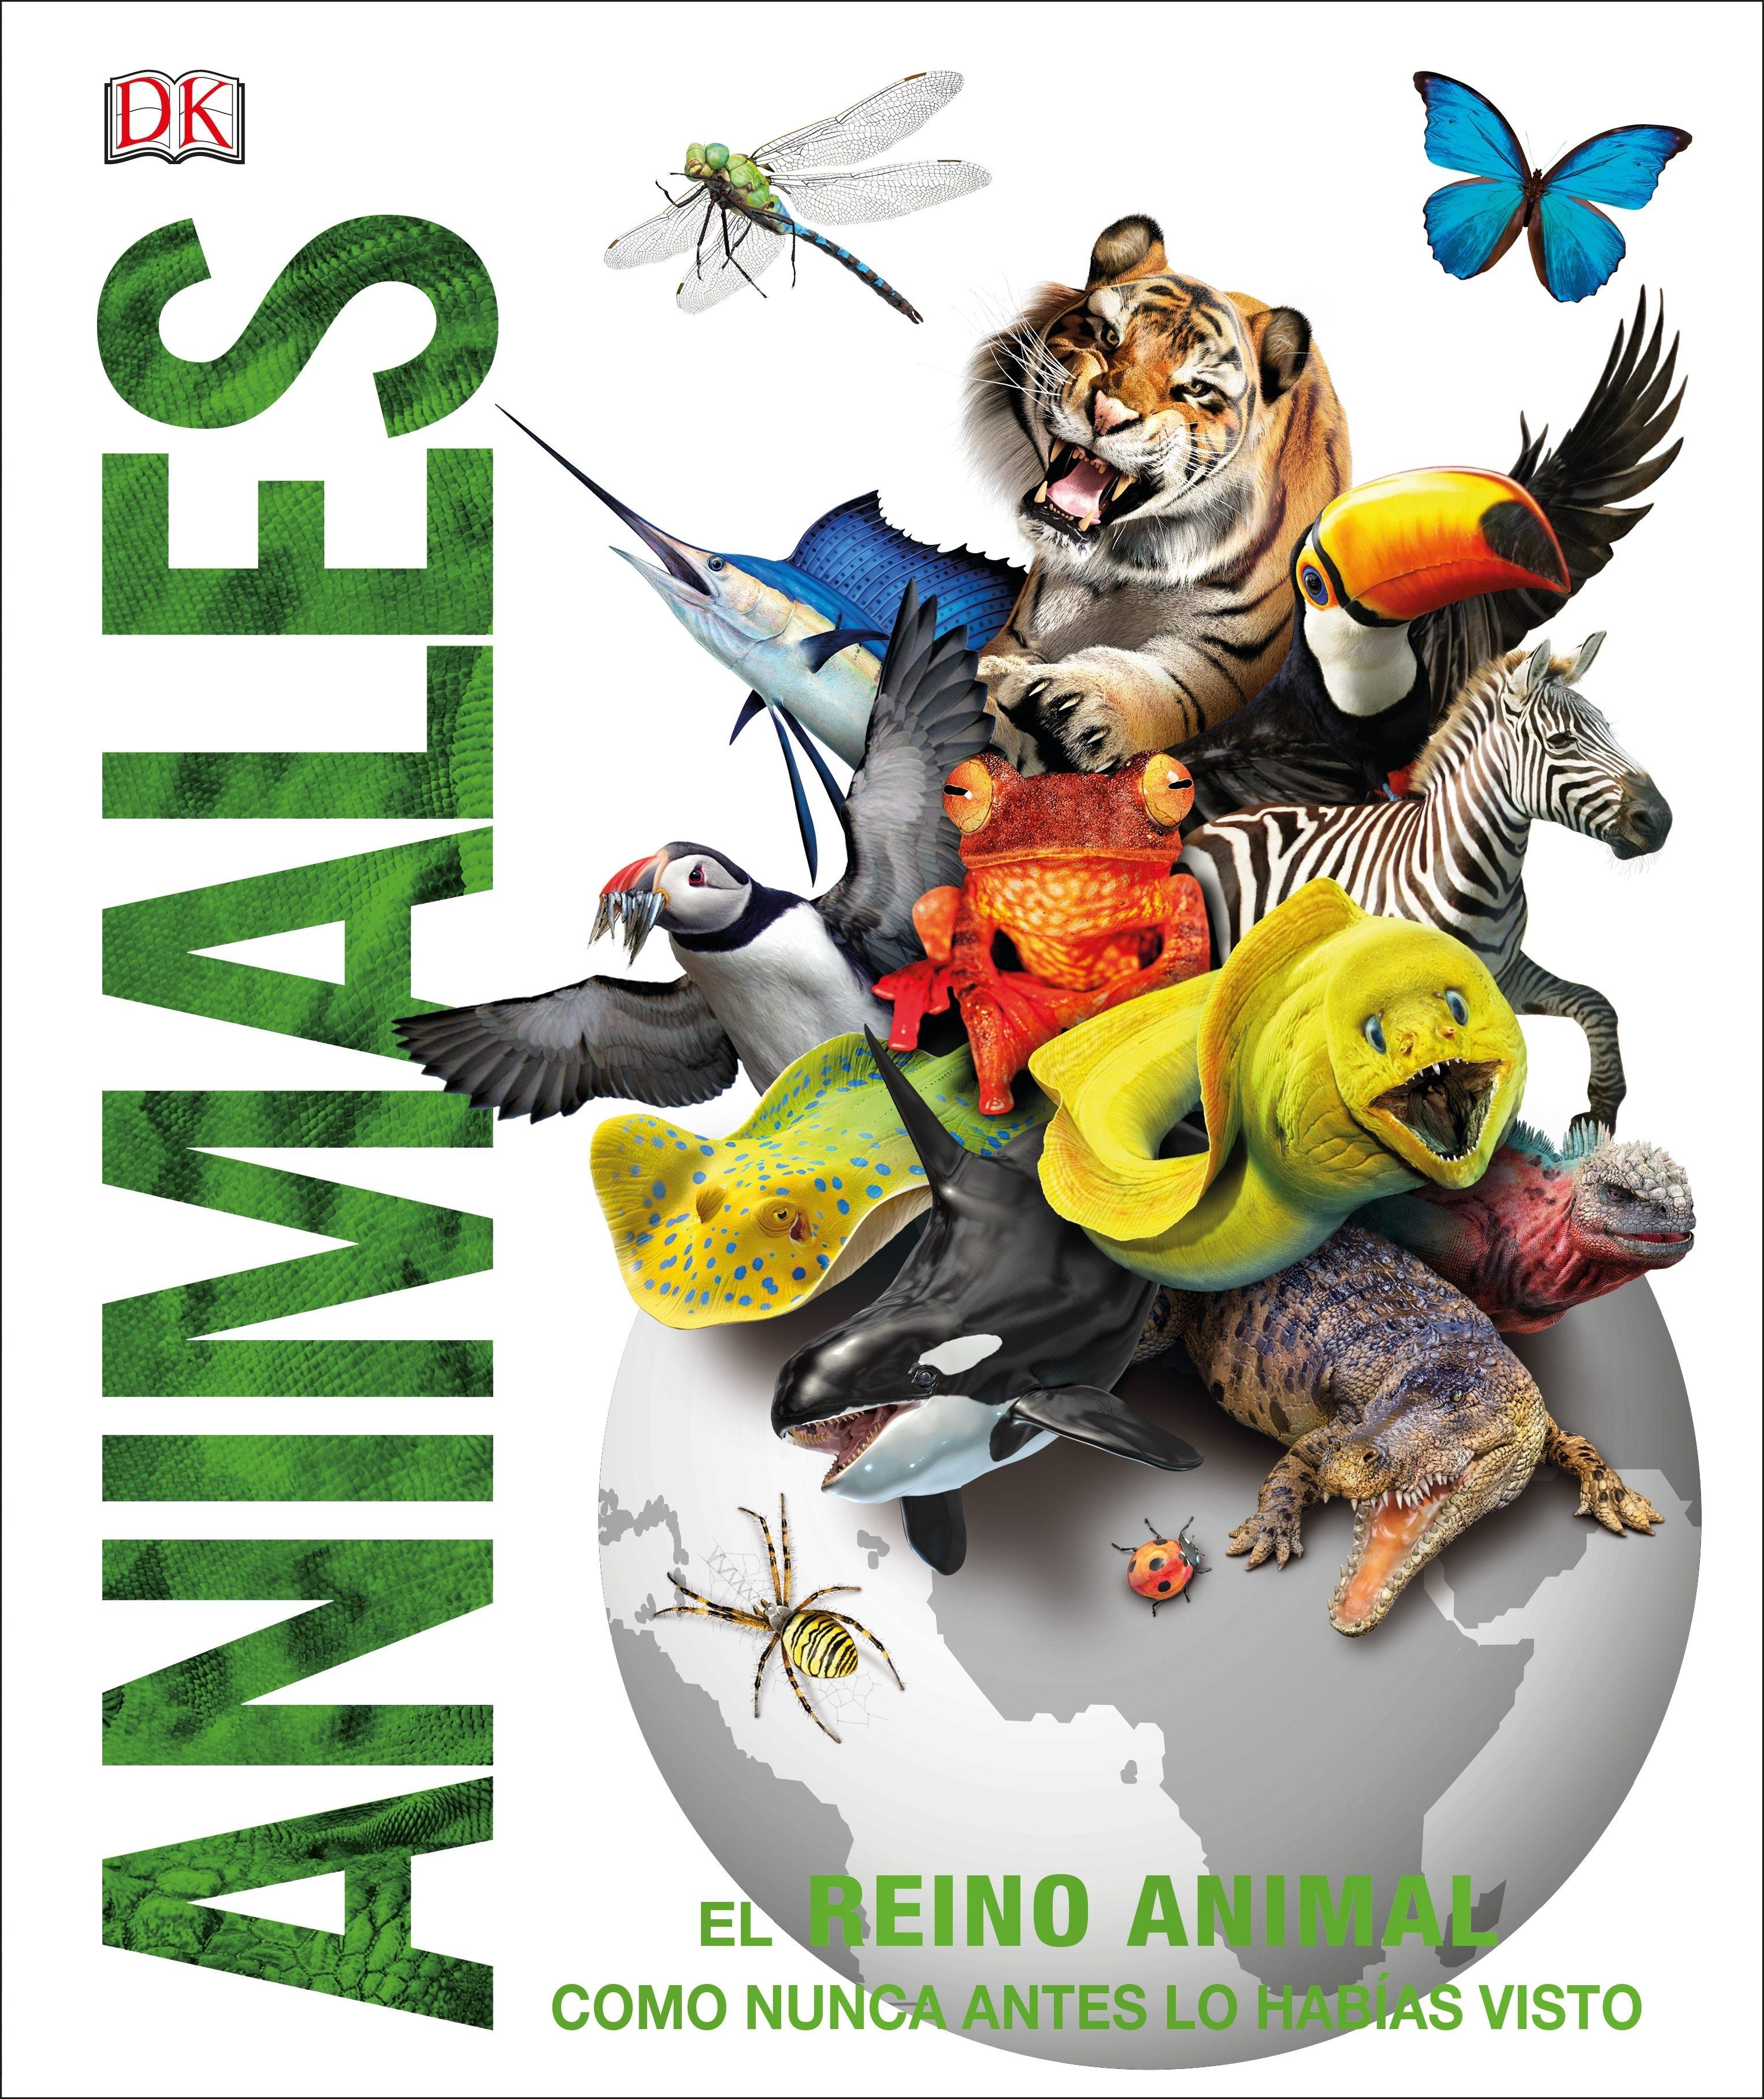 Animales "El reino animal como nunca antes lo habías visto con increíbles ilustrac". 